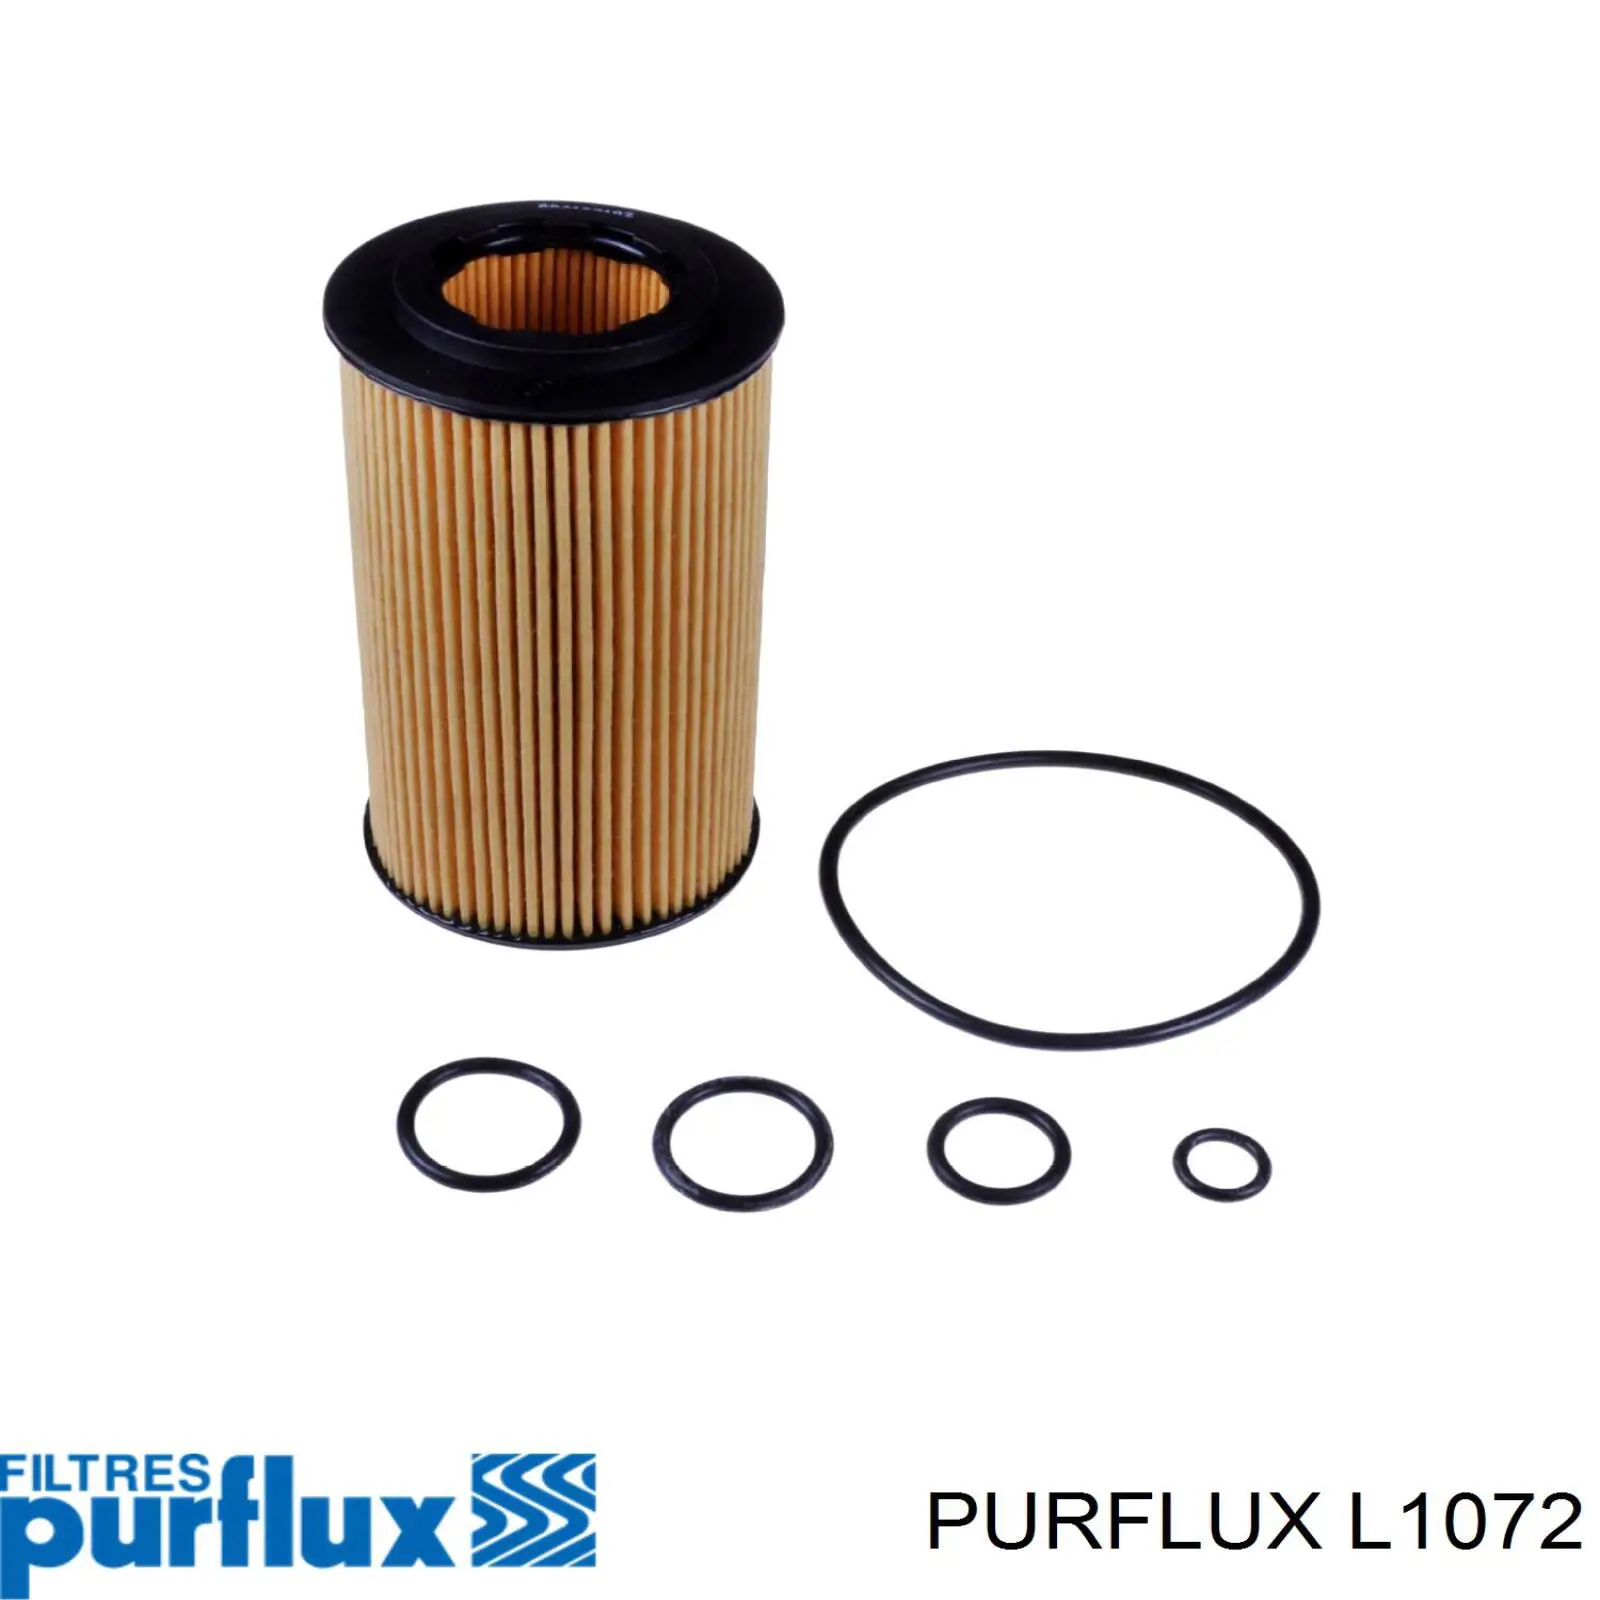 Filtro de aceite L1072 Purflux